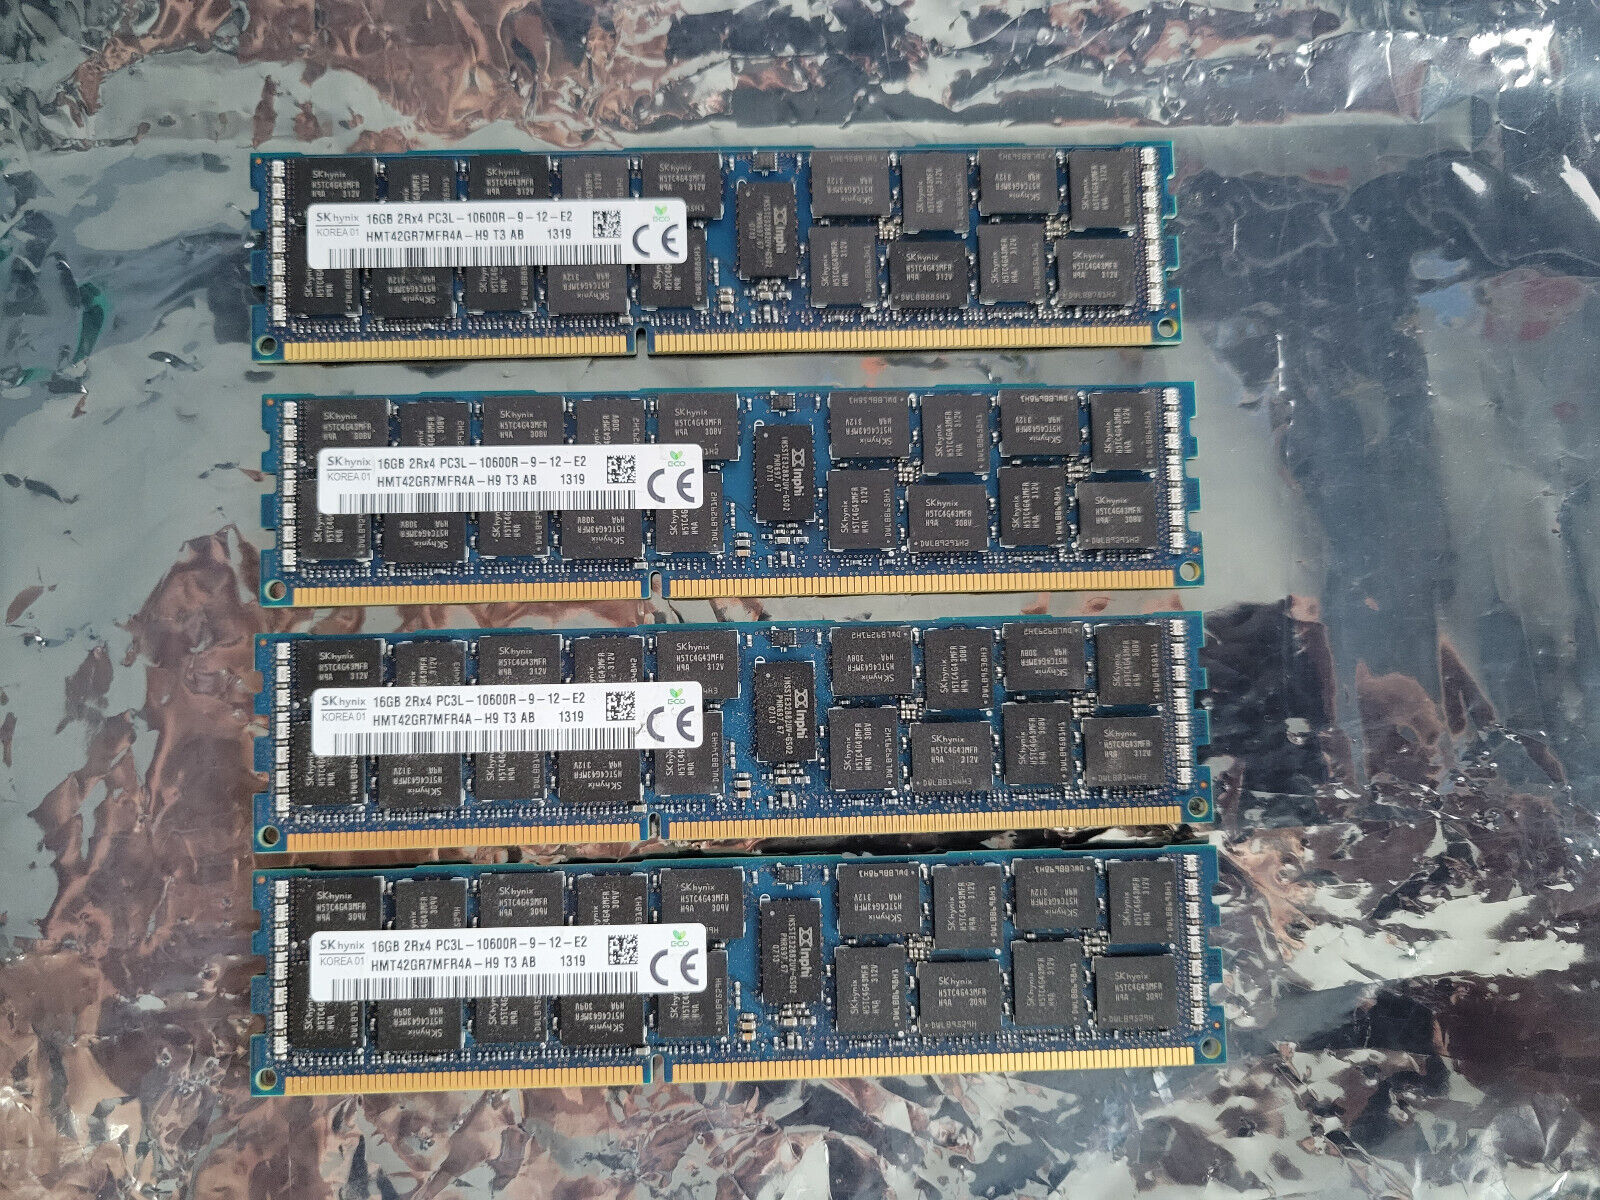 64 GB (Lot of 4 X 16 GB) Hynix PC3-10600R HMT42GR7MFR4A ECC RAM Server Memory